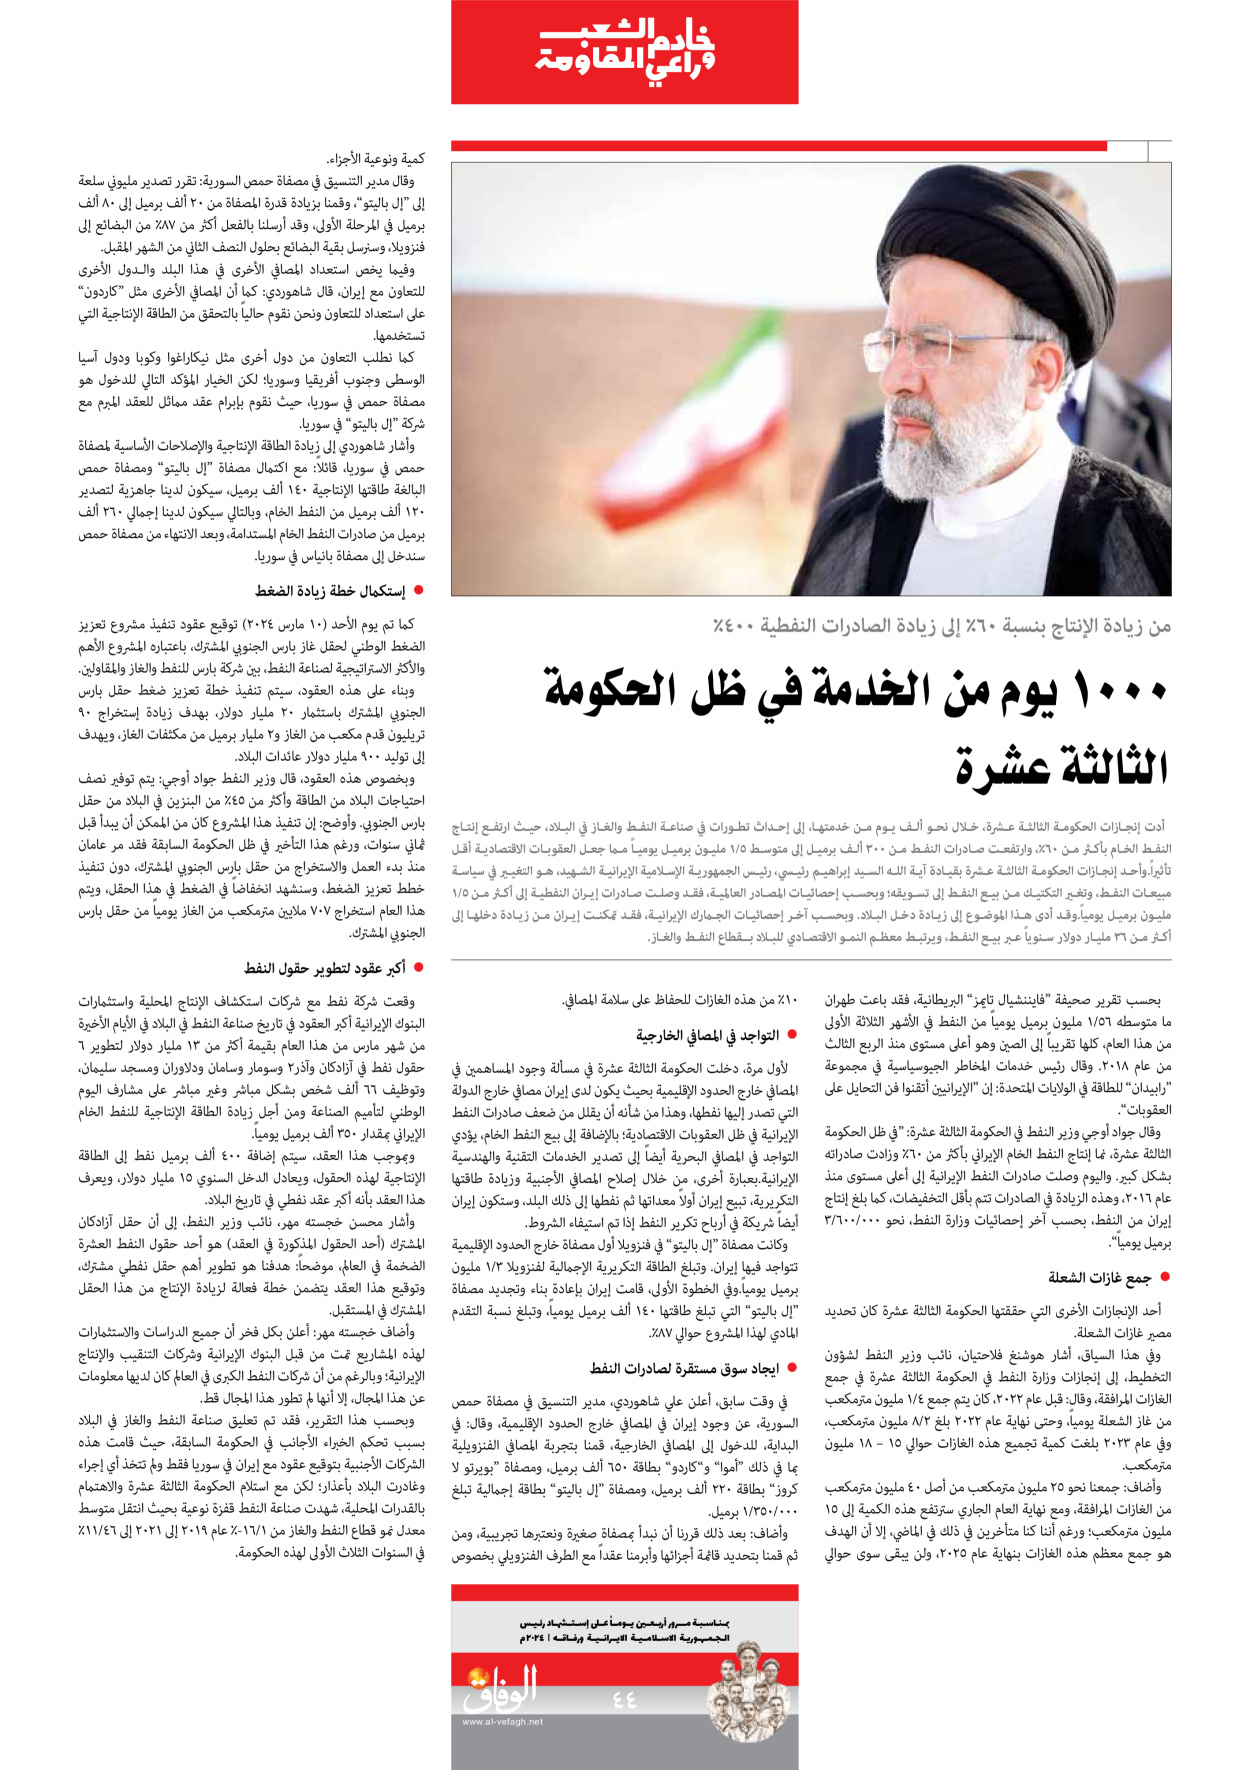 صحیفة ایران الدولیة الوفاق - ملحق ویژه نامه چهلم شهید رییسی - ٢٩ يونيو ٢٠٢٤ - الصفحة ٤٤